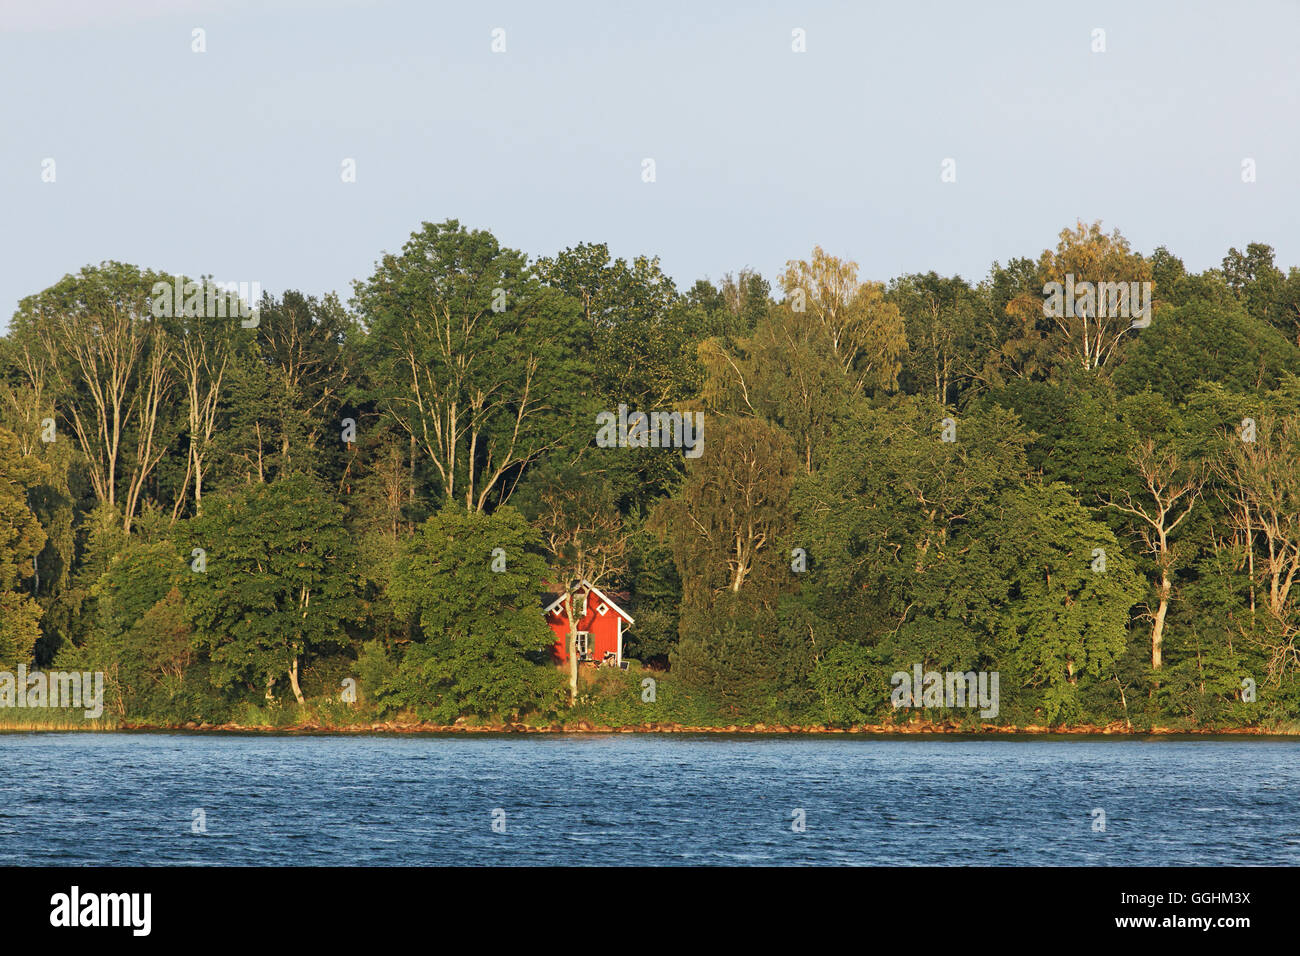 Casa de vacaciones en rojo en el borde del lago Vaettern, Suecia Foto de stock